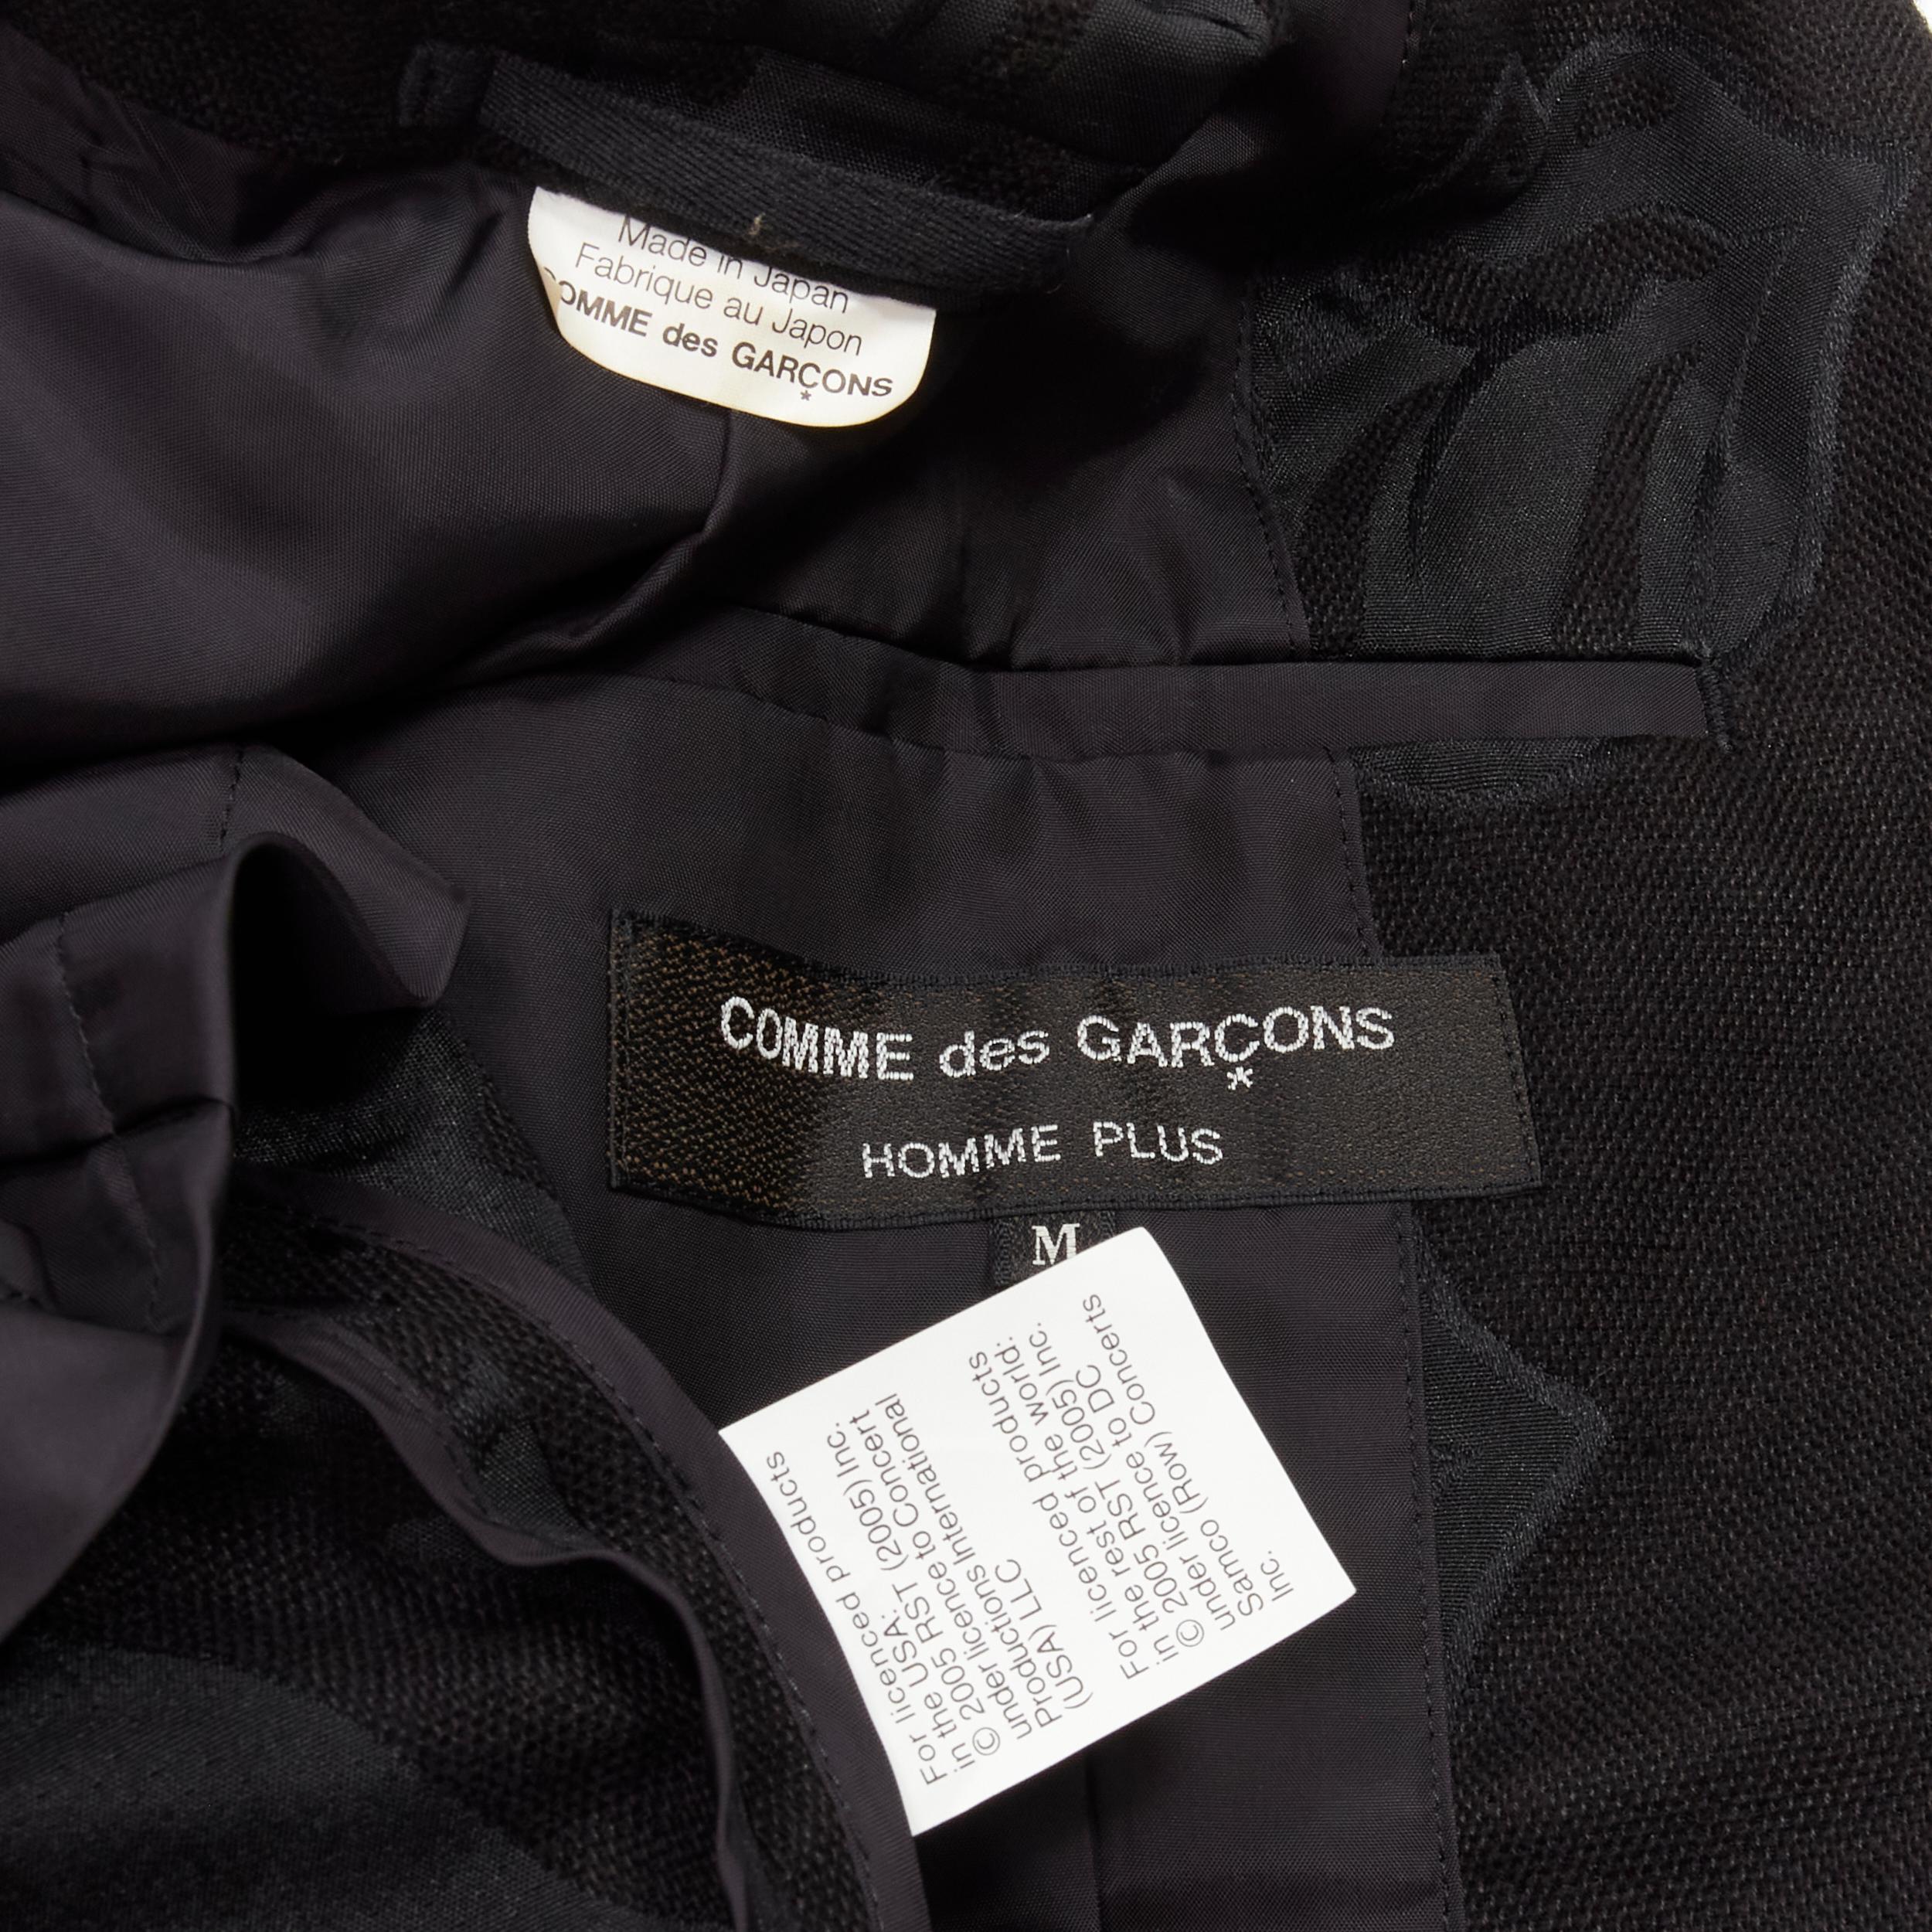 COMME DES GARCONS HOMME PLUS 2005 Rolling Stone jacquard black tailcoat blazer M For Sale 6